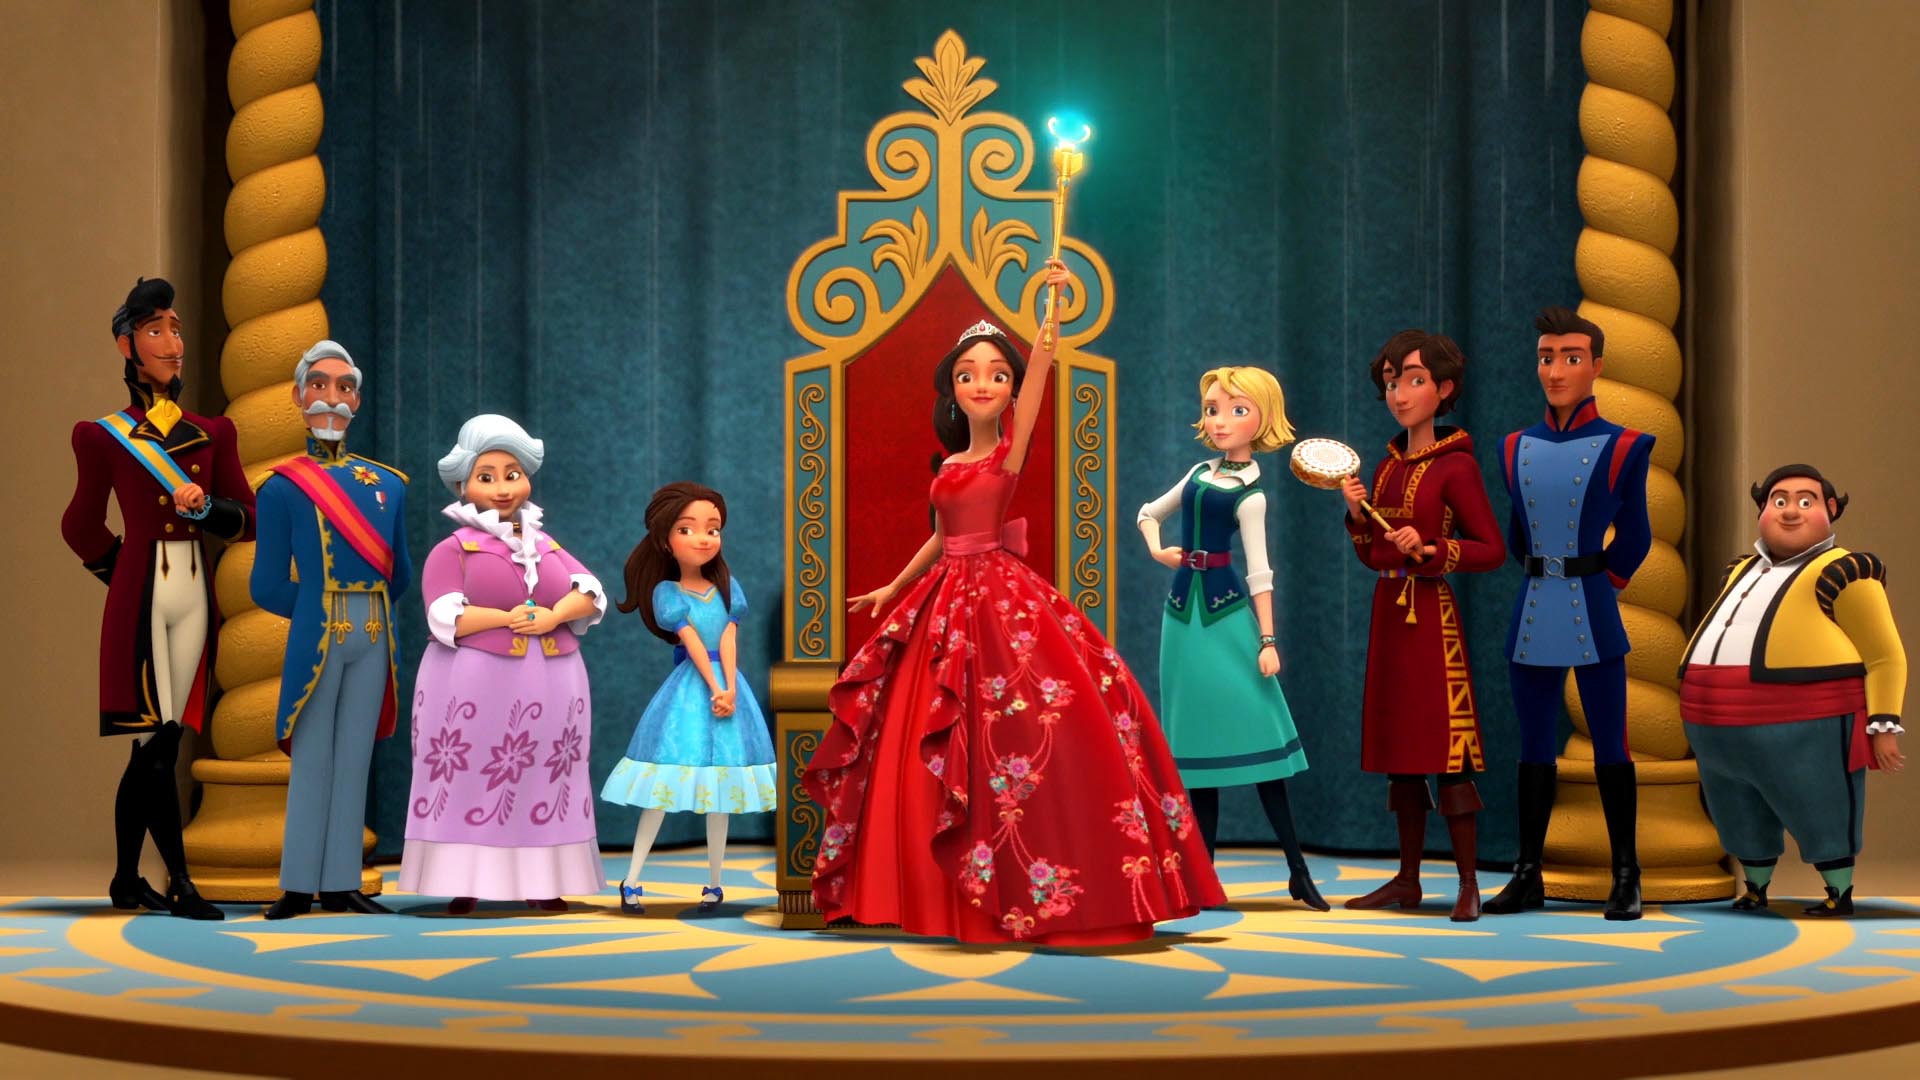 La nueva princesa, que invadirá la televisión a través de Disney Channel, es de origen latino y nace ante la necesidad de conquistar a los hispanos